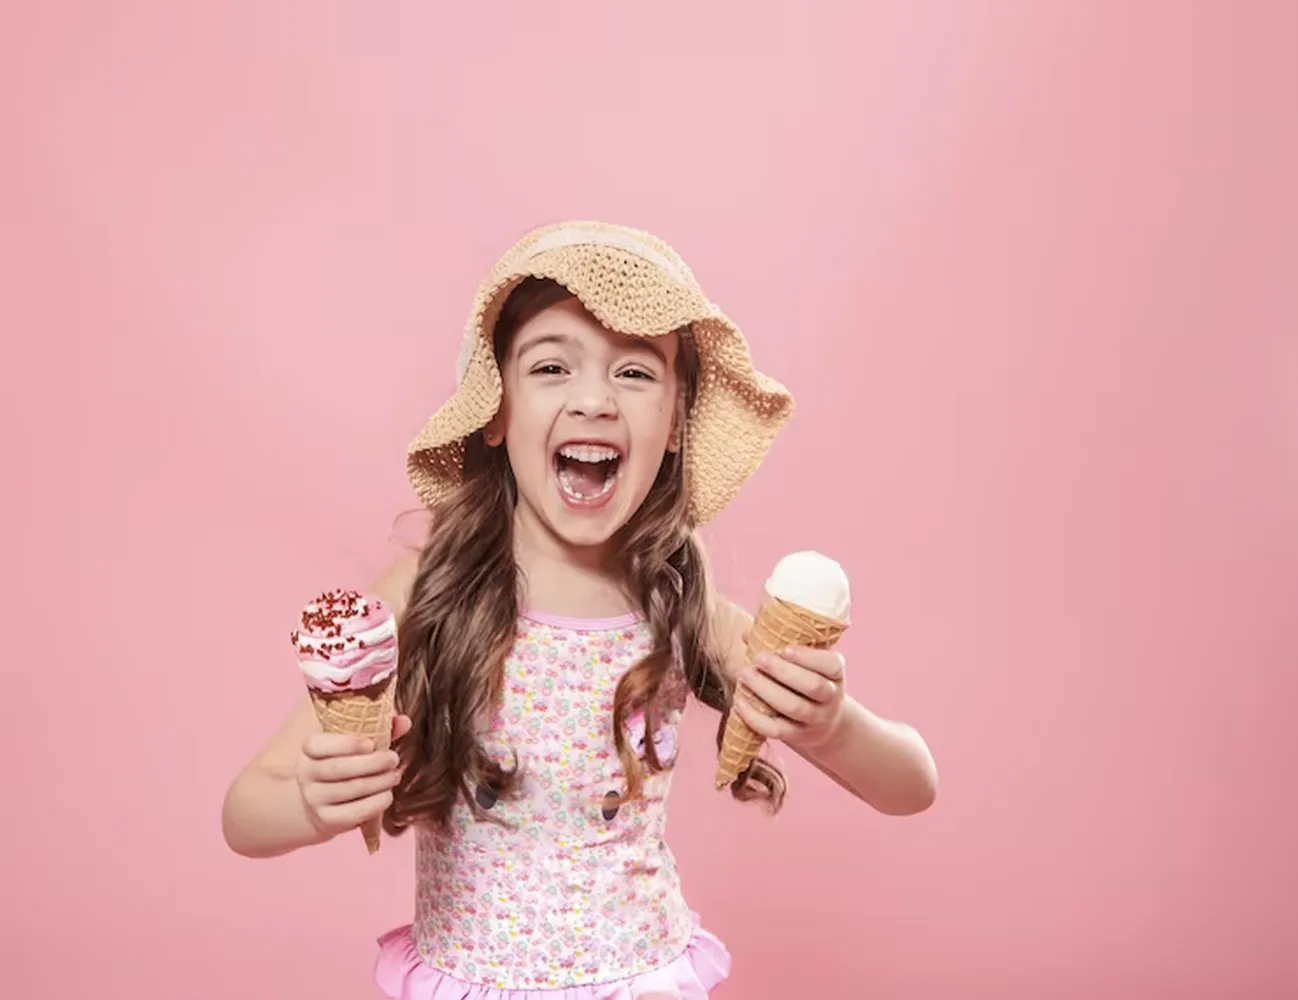 پوستر برای بستنی فروشی طرح پرتره دختر کوچک شاد با بستنی